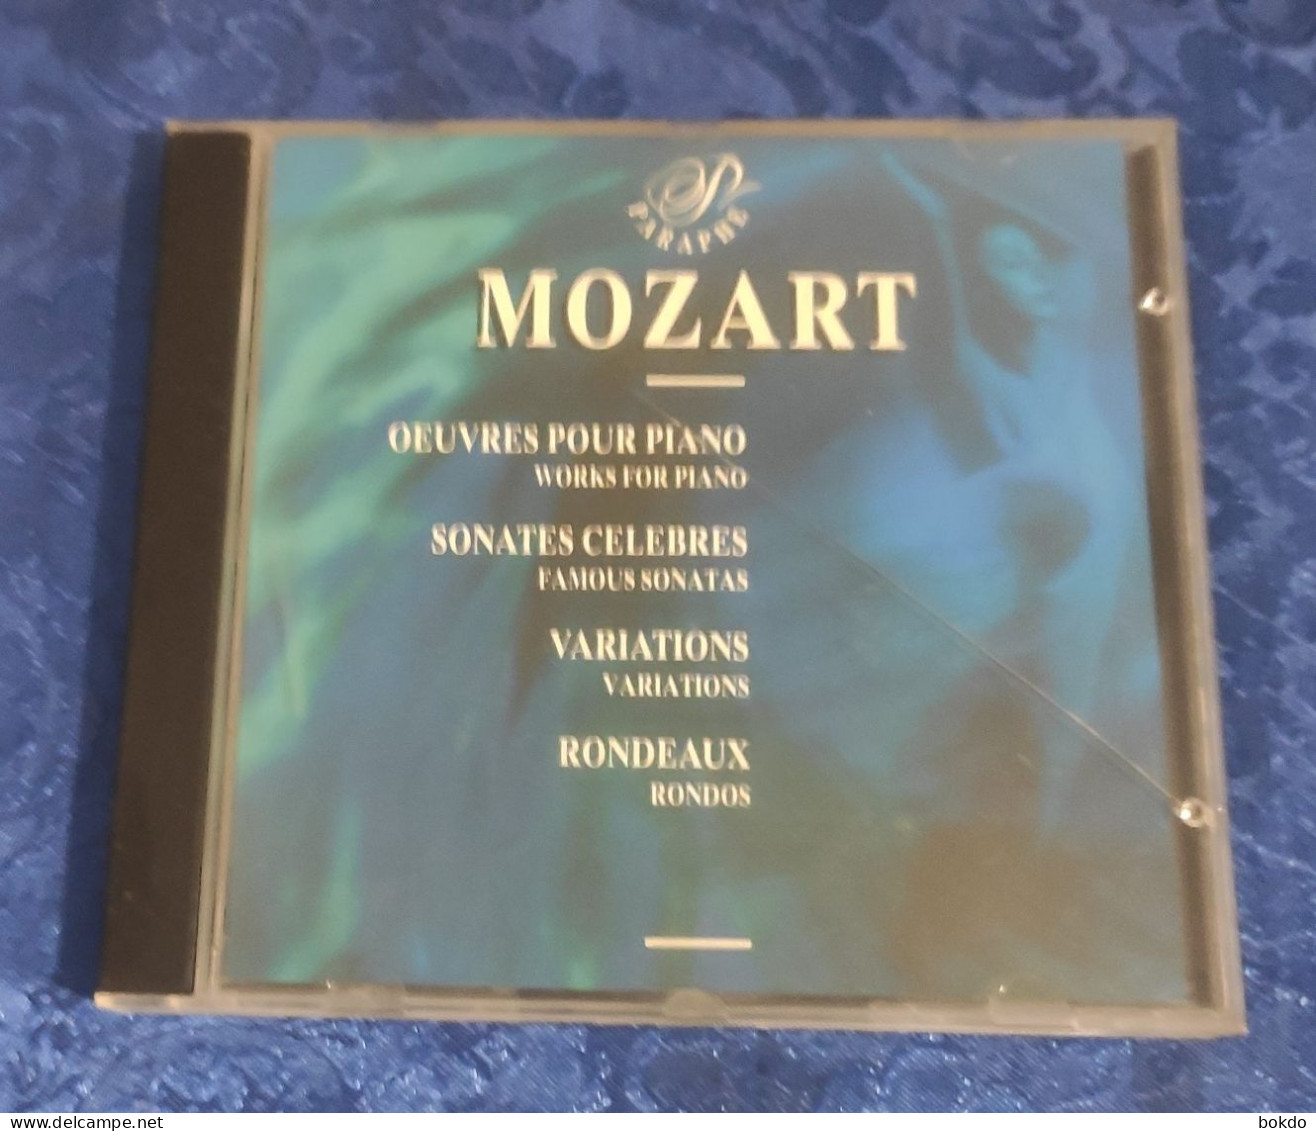 Mozart - Oeuvres Pour Piano - Sonates Celebres - Variation - Rondeaux - Clásica